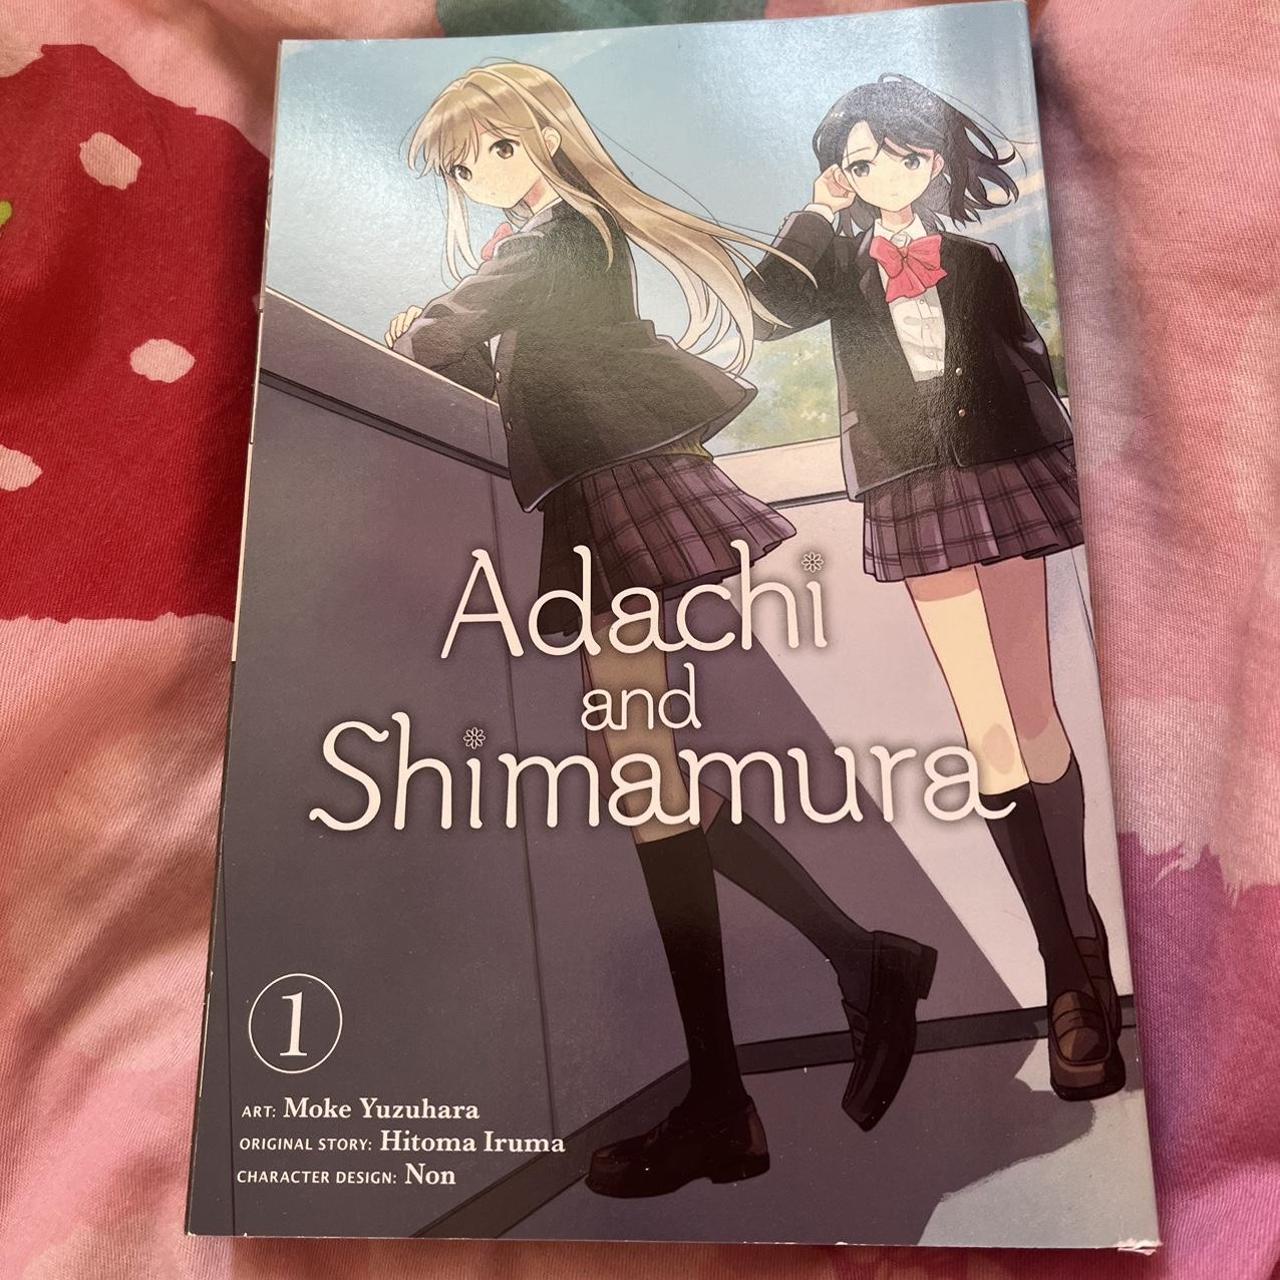 Adachi and Shimamura Manga